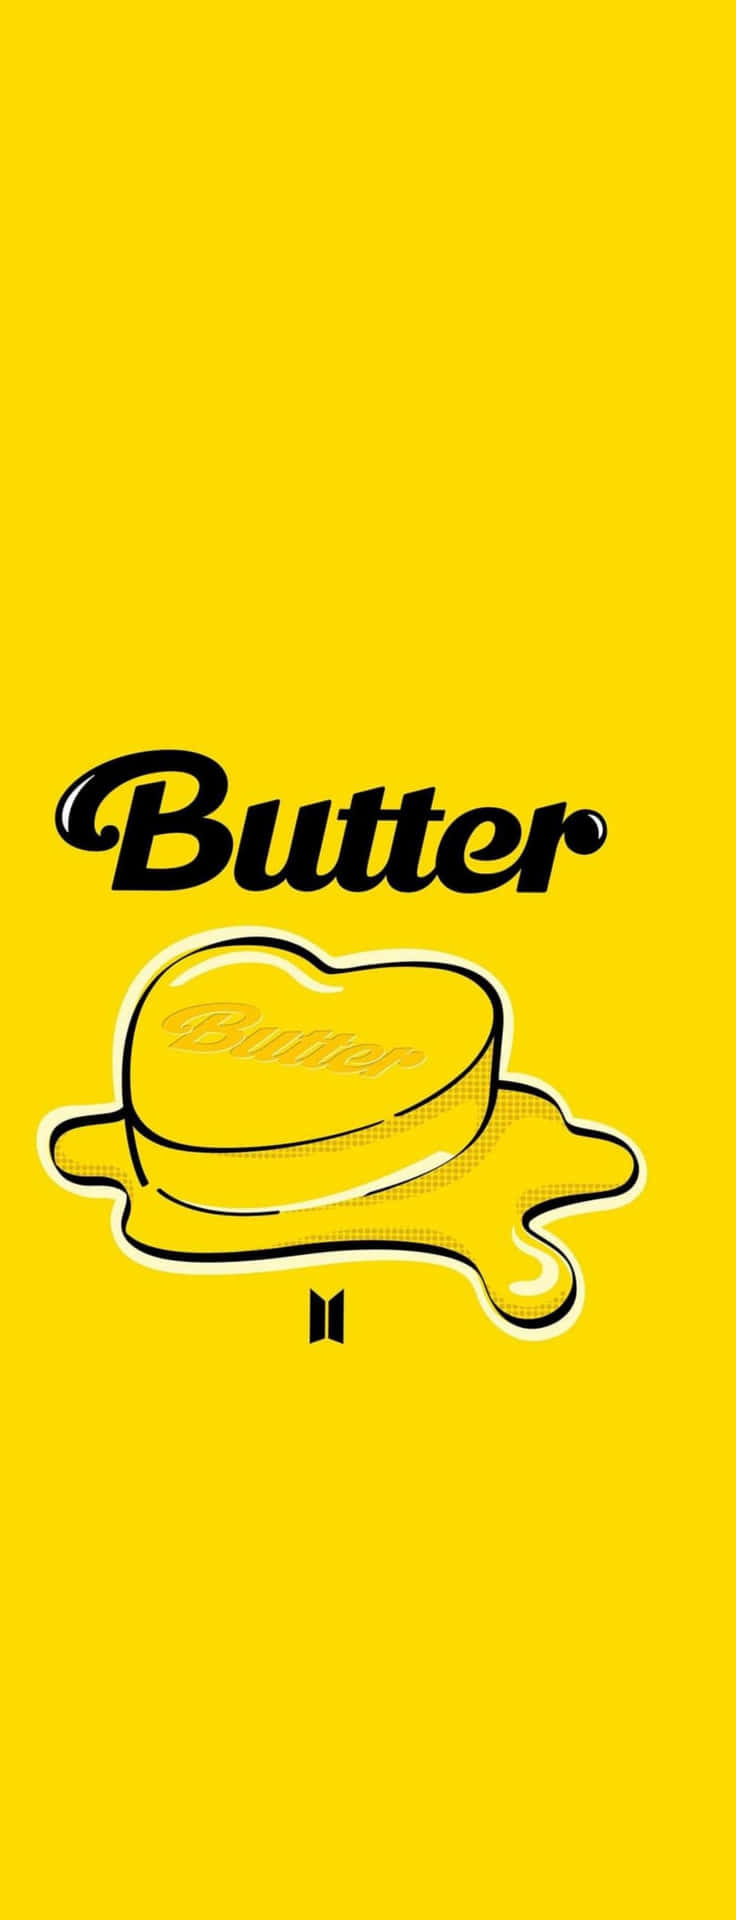 Btscelebra Il Lancio Del Loro Singolo 'butter'